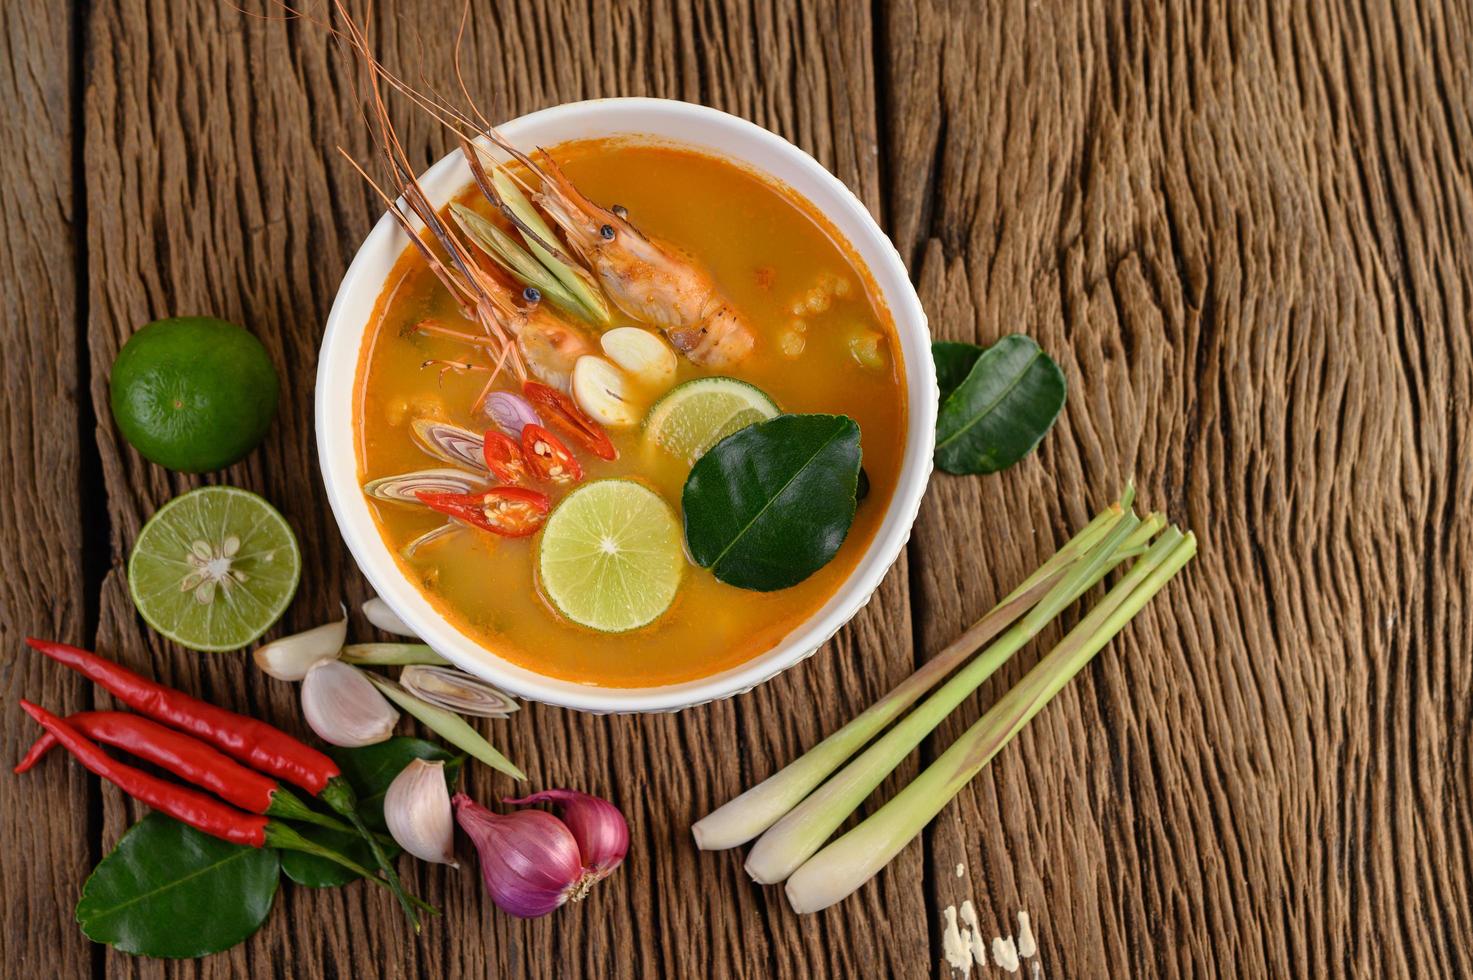 zuppa tailandese calda e piccante tom yum kung foto